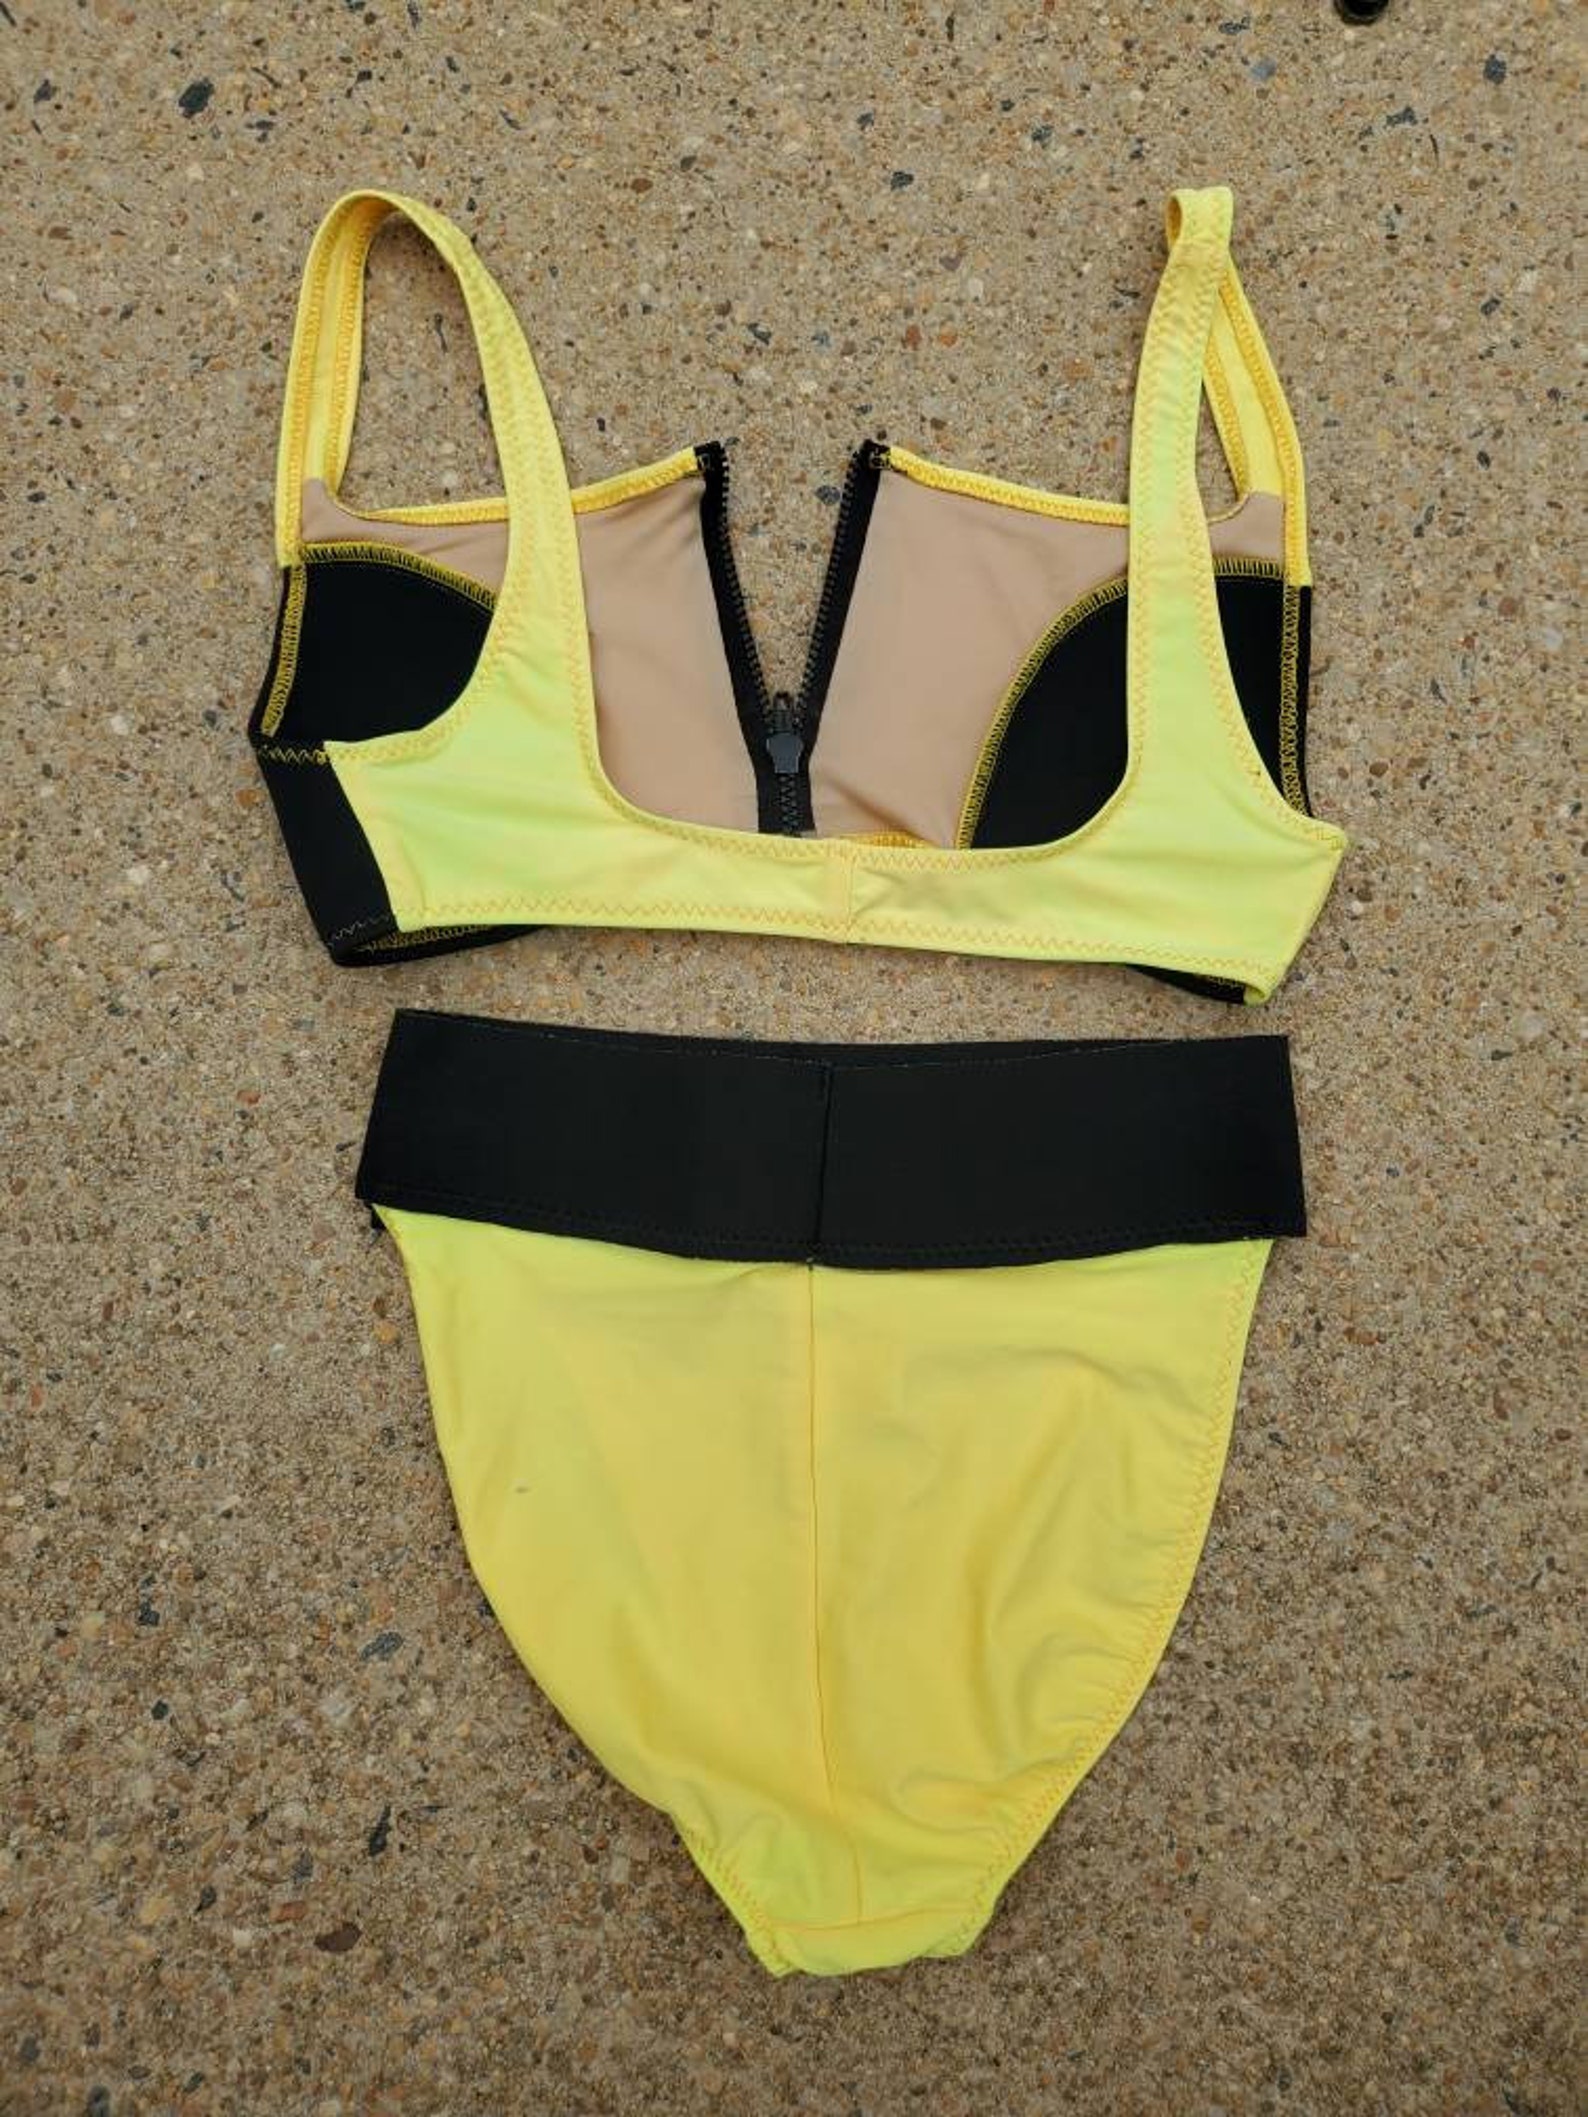 Vintage 1980s 90s Body Glove Bikini Robin Piccone Swimsuit | Etsy